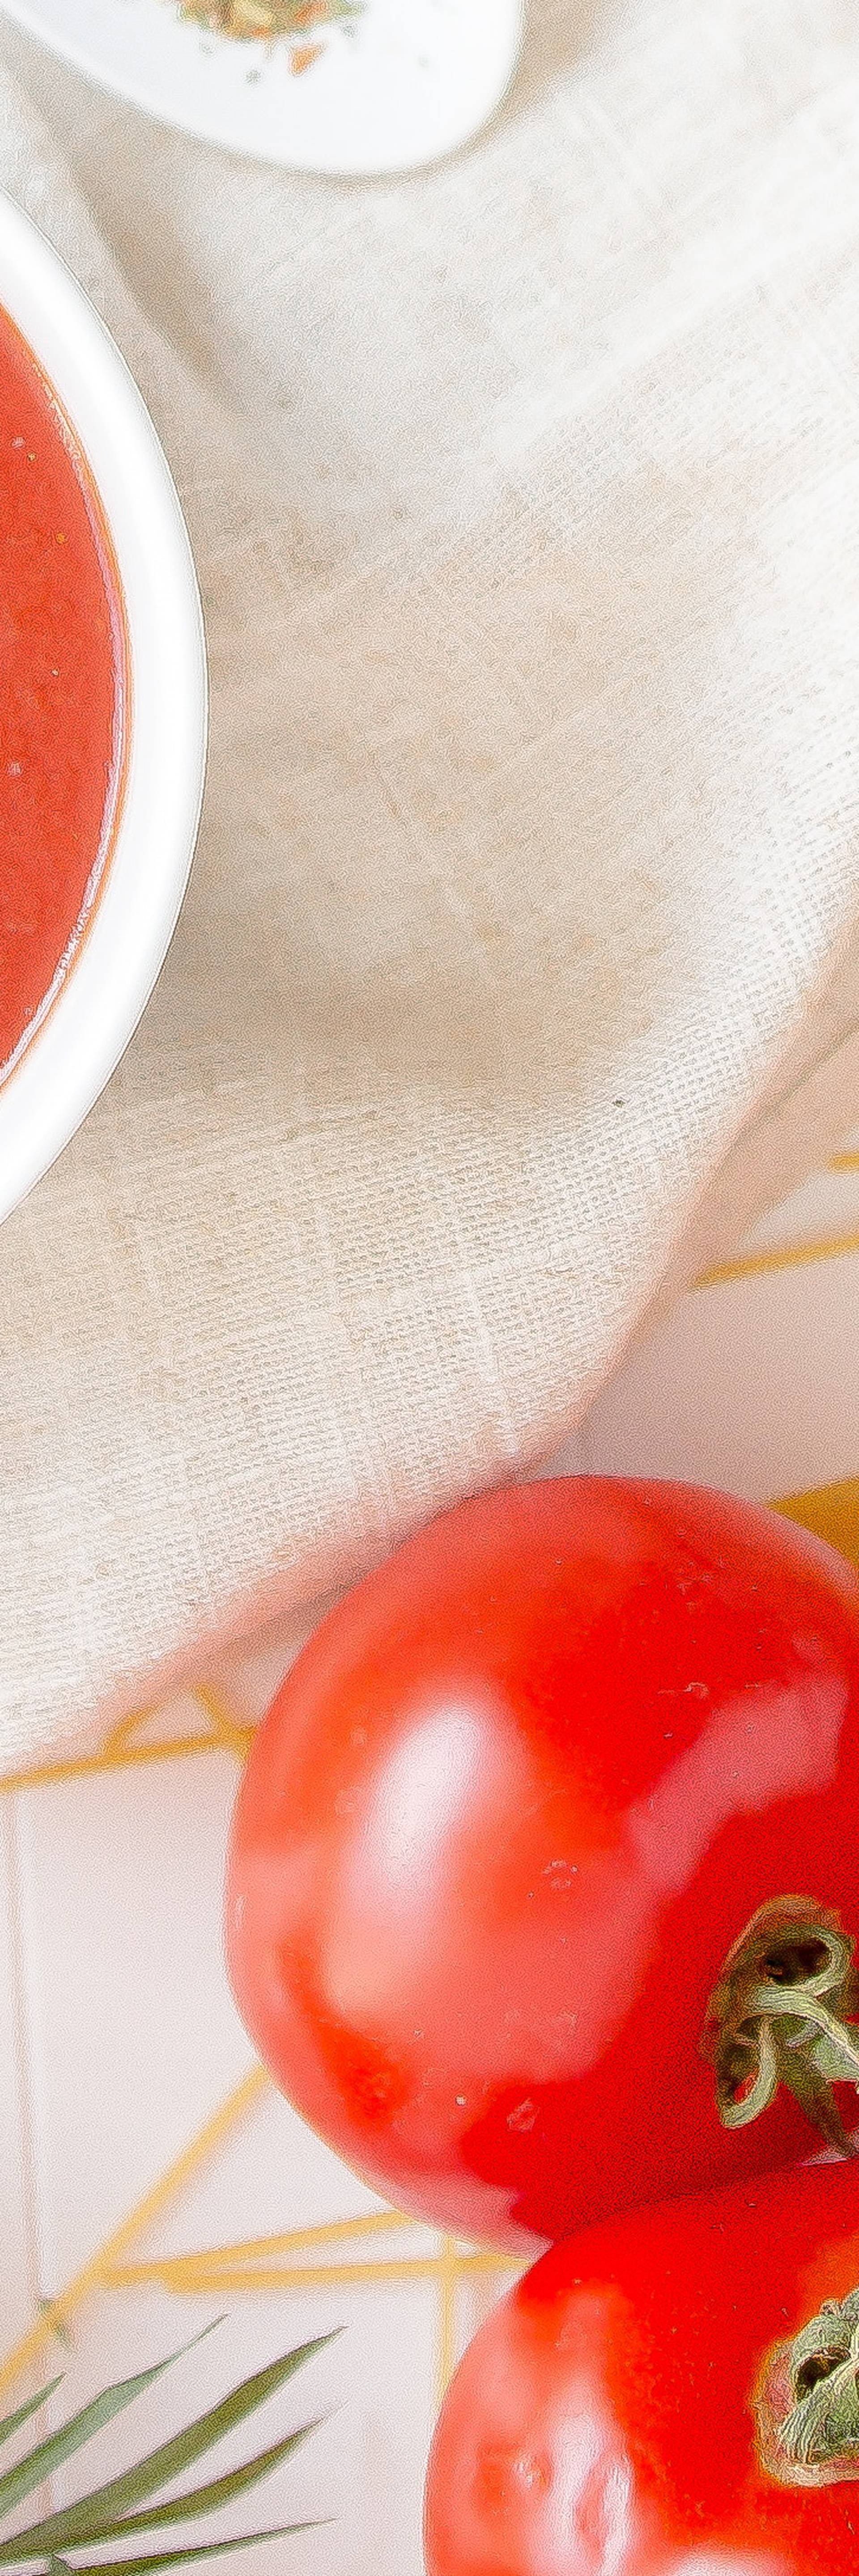 Ključni umak od rajčice koji ide u 4 jela: Variva, ragu, povrće